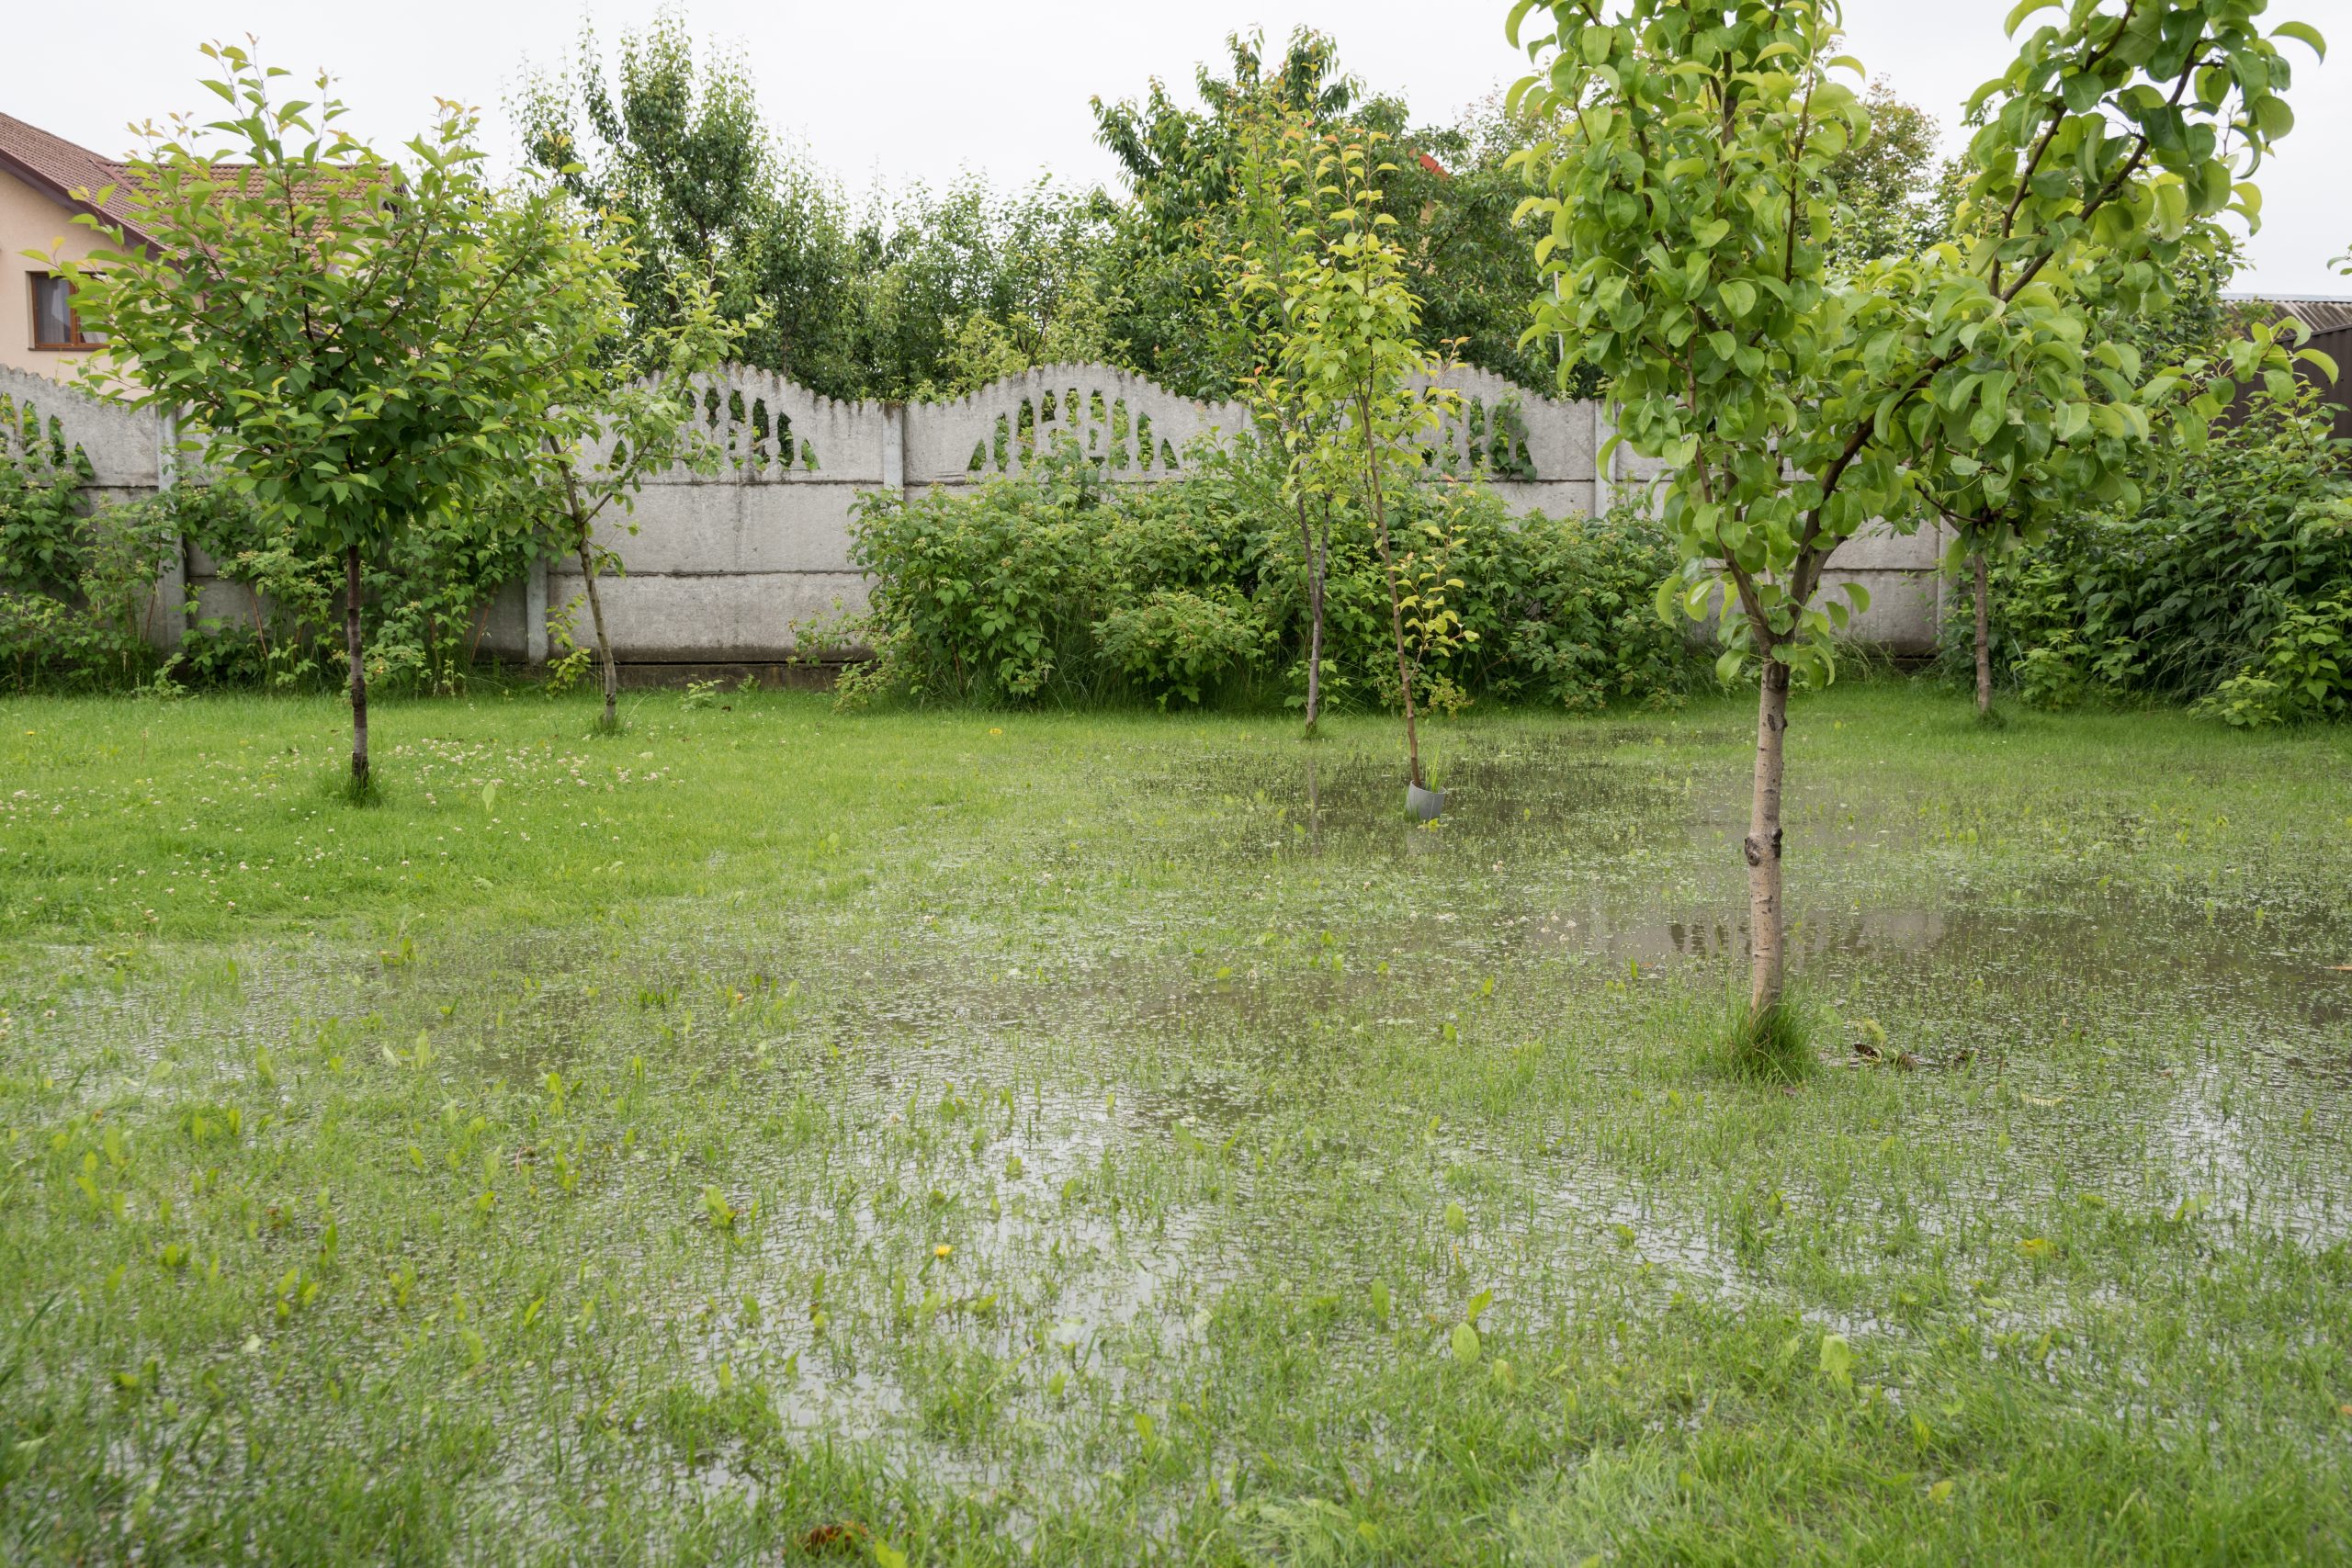 Backyard drainage problems